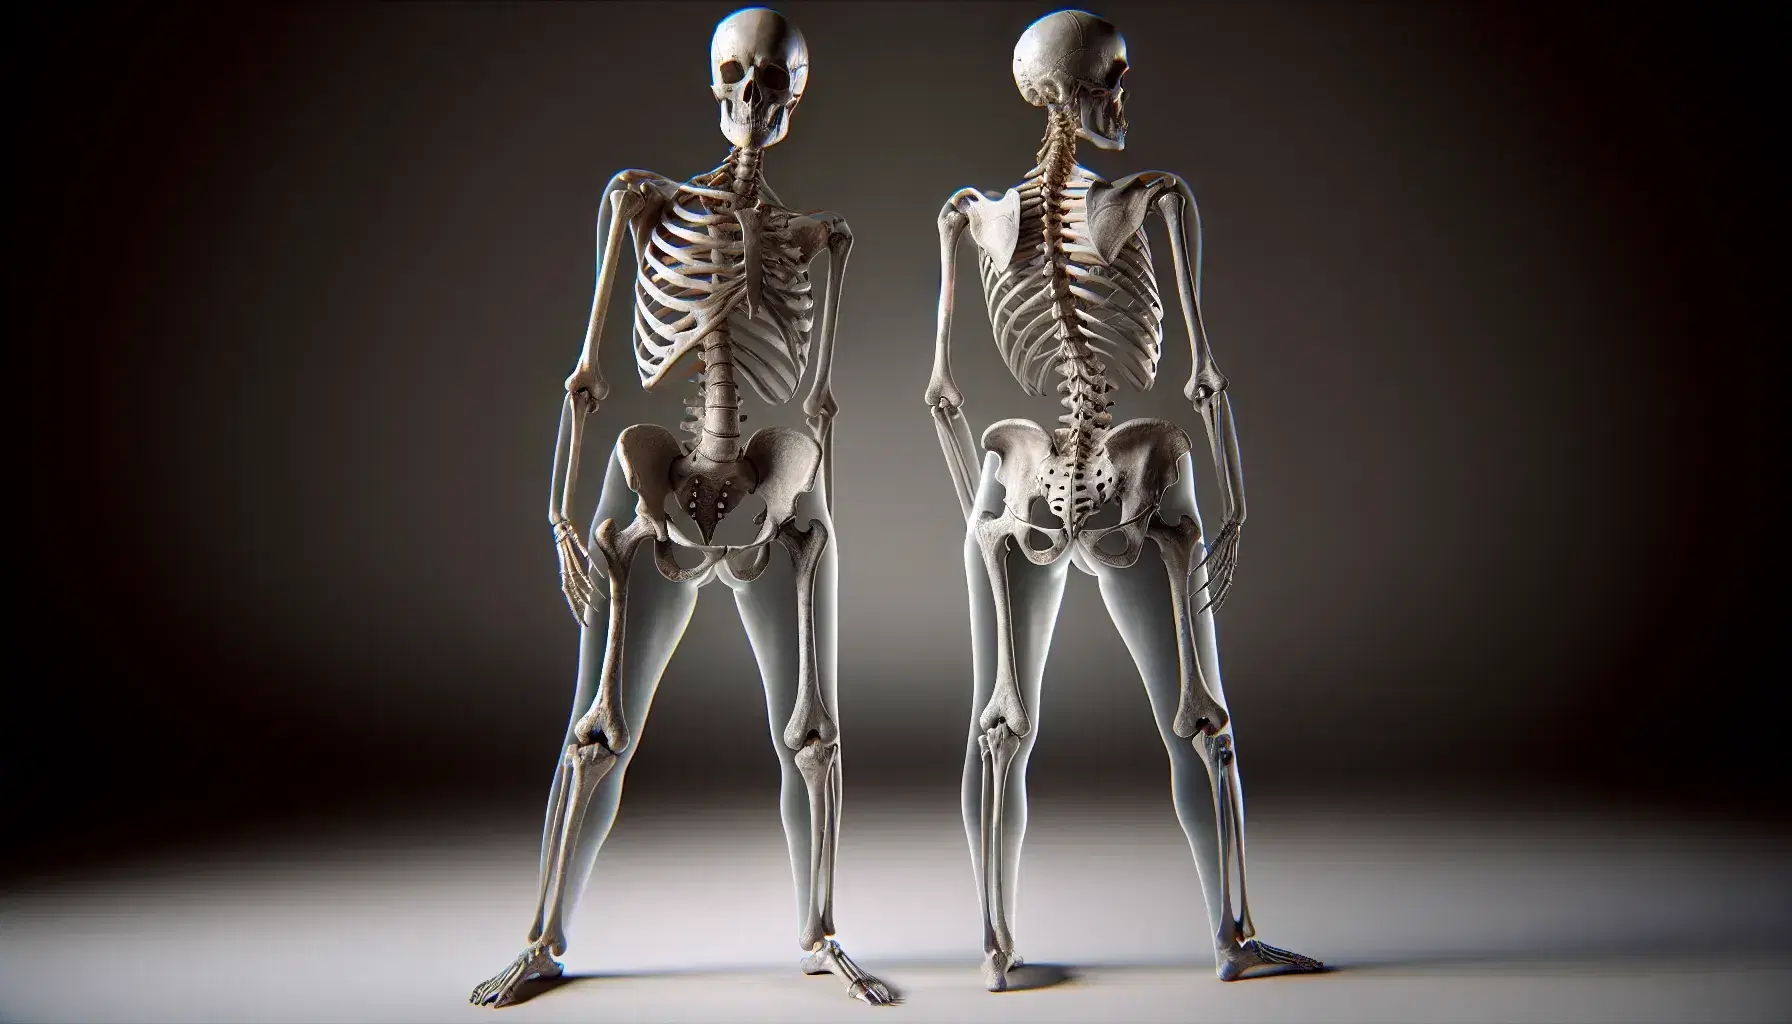 Esqueletos humano de pie mostrando diferencias anatómicas entre pelvis femenina y masculina, con detalles de huesos ilíacos y sacro.